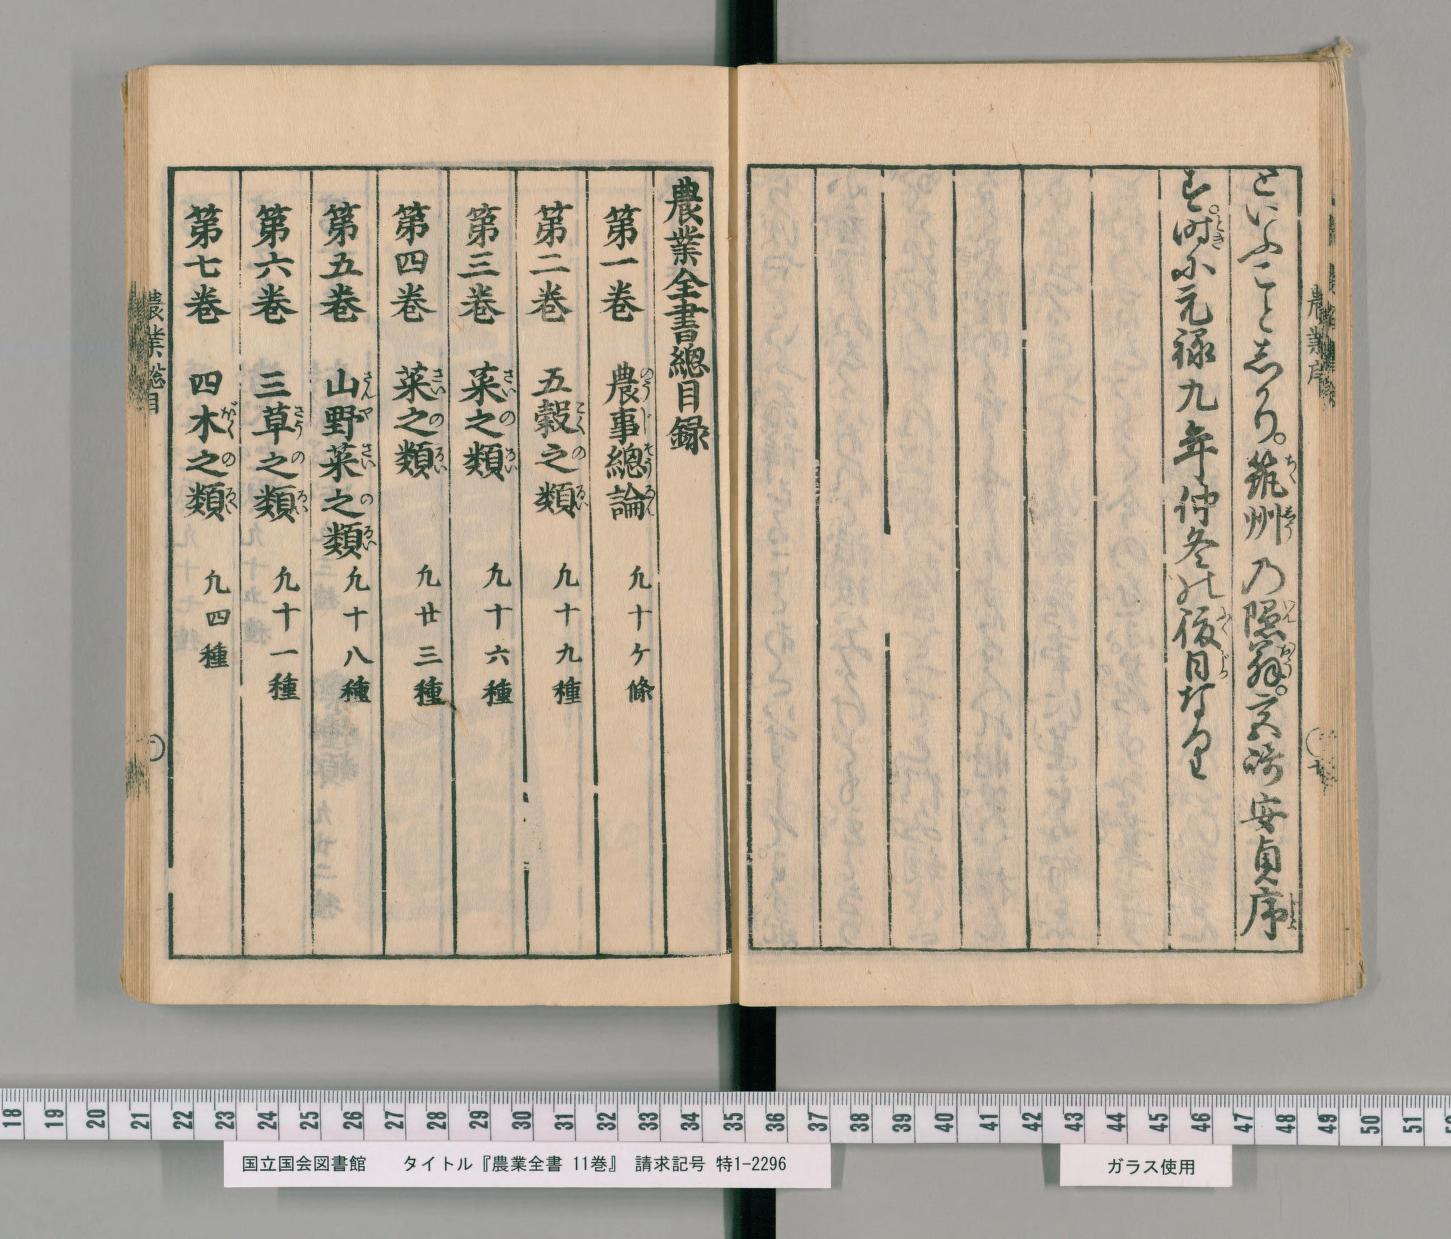 1697年 農業全書 日本最古の農書 宮崎安貞著 序文は貝原益軒 – おもと